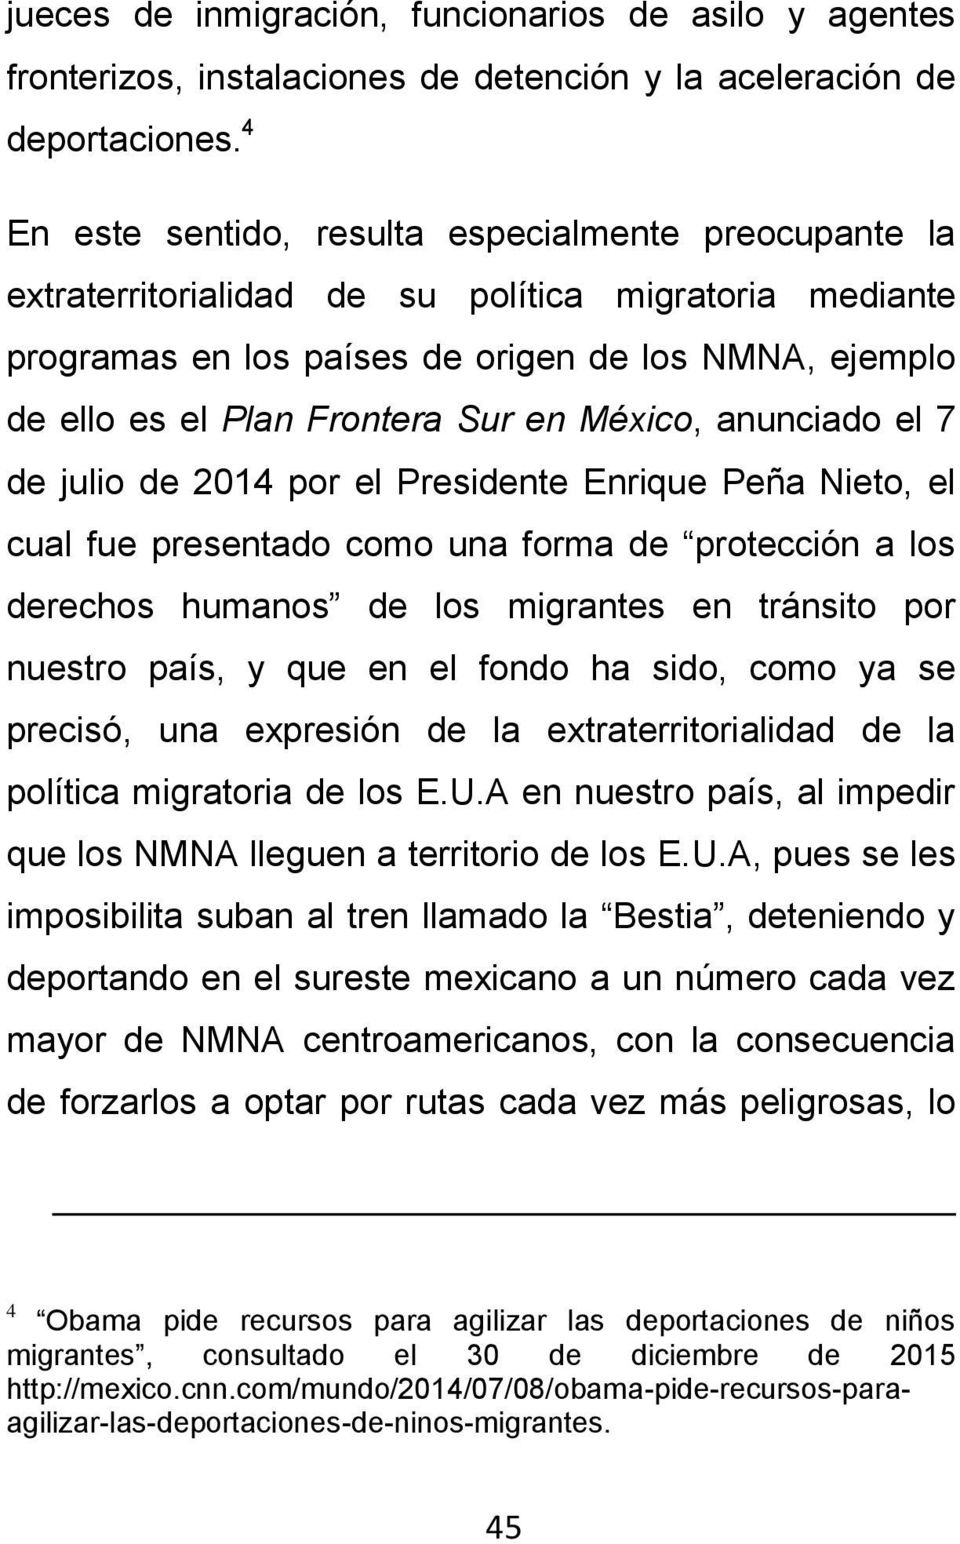 en México, anunciado el 7 de julio de 2014 por el Presidente Enrique Peña Nieto, el cual fue presentado como una forma de protección a los derechos humanos de los migrantes en tránsito por nuestro